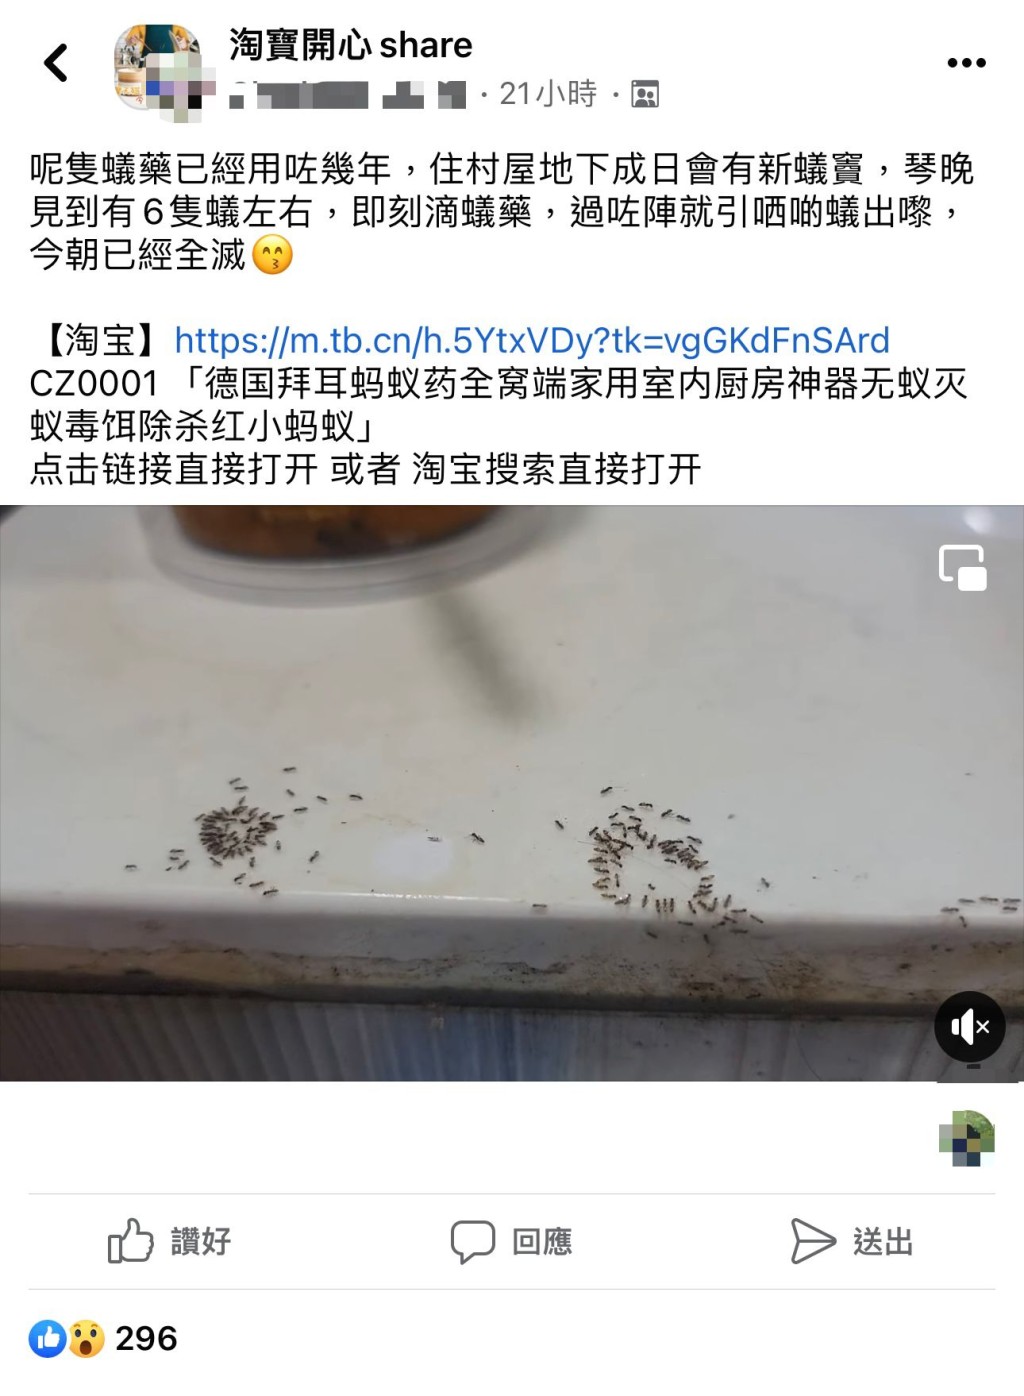 根據「淘寶開心share」Facebook群組，日前有港女分享她在淘寶所購入的螞蟻藥。（圖片來源：「淘寶開心share」Facebook群組） 